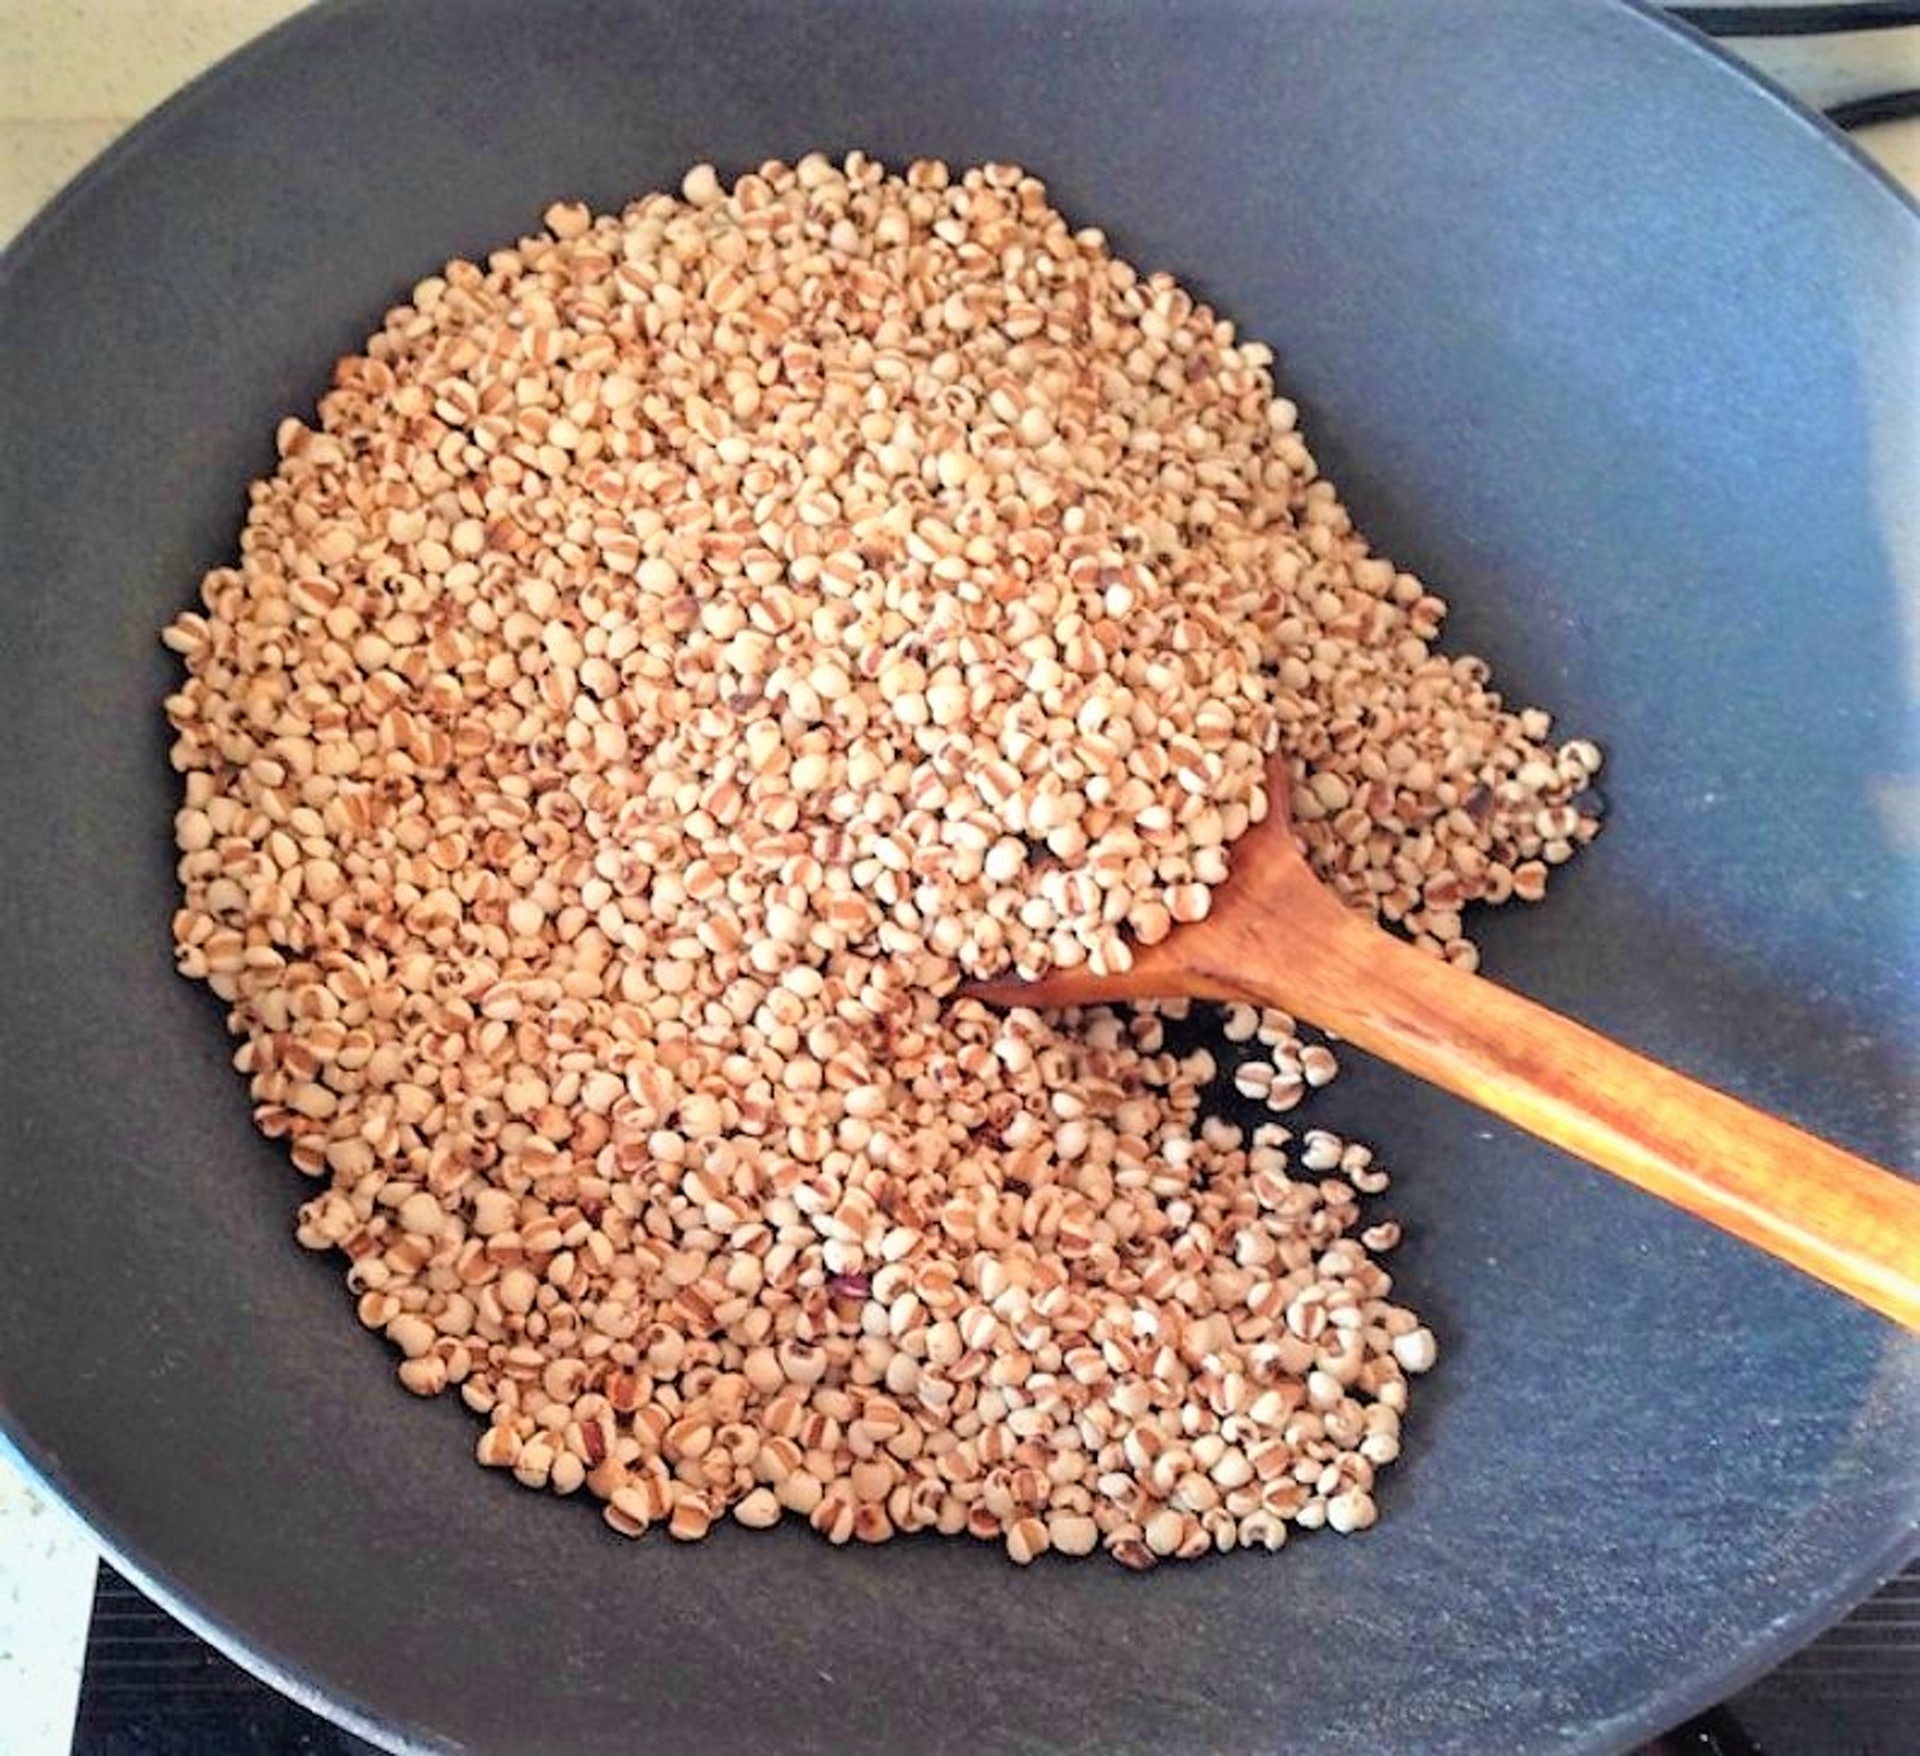 3.煮法錯了︳赤小豆及薏米難煮爛，宜用溫水浸泡2小時後再煮，否則營養成分難出，如沒有時間浸泡，可以多煮半小時。（網上圖片）